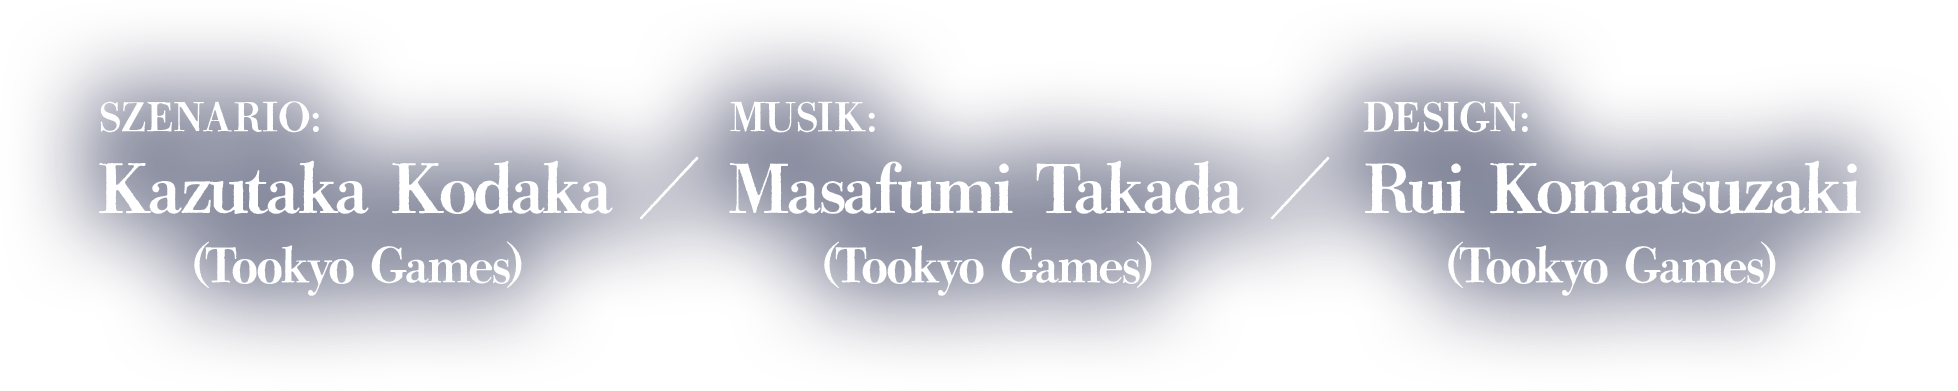 Szenario:Kazutaka Kodaka (Tookyo Games)Musik:Masafumi Takada (Tookyo Games)Design:Rui Komatsuzaki (Tookyo Games)